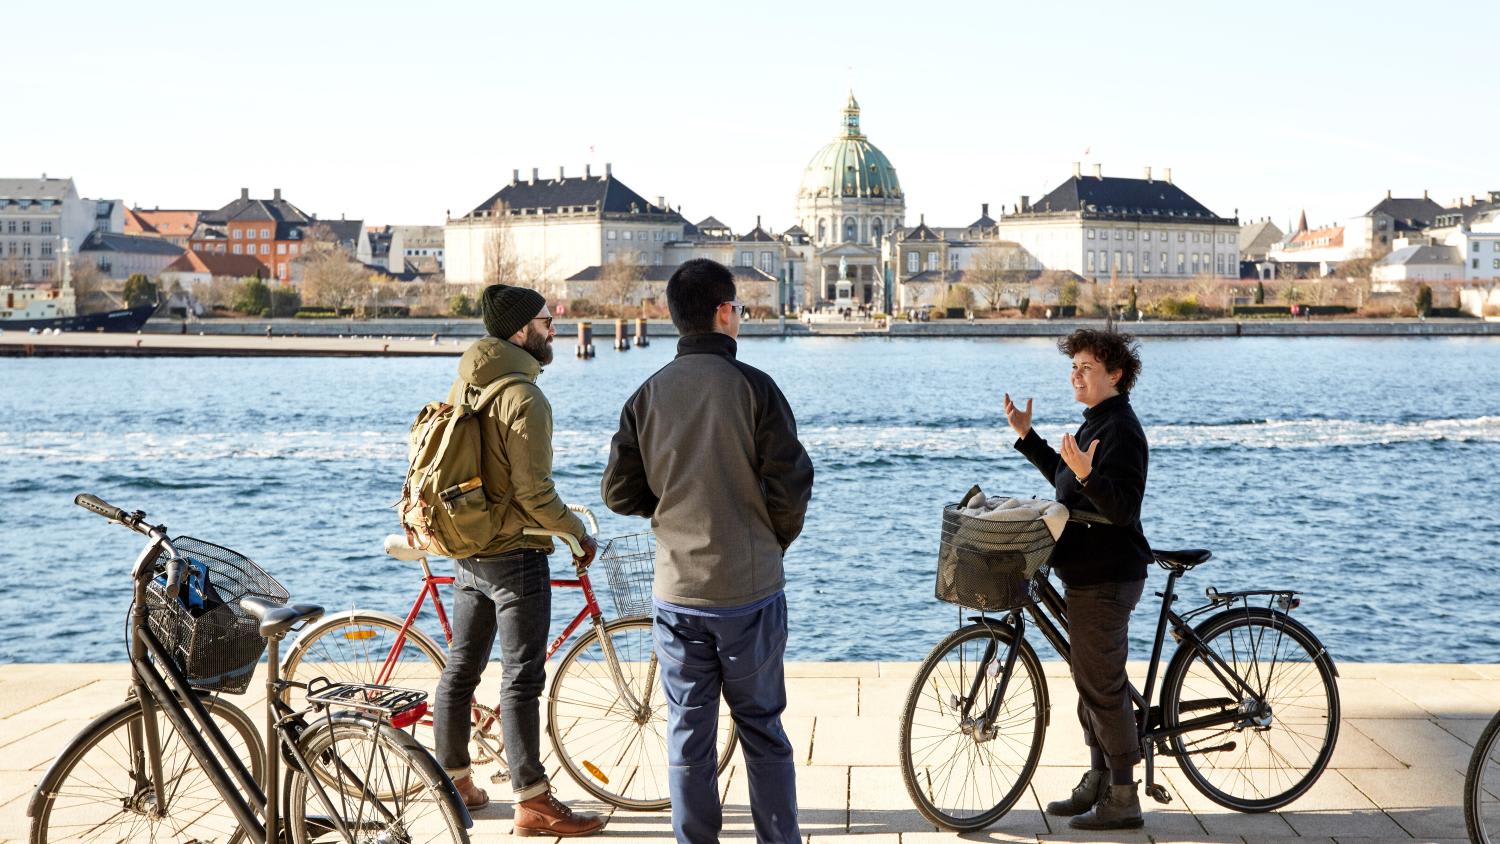 Du lịch trải nghiệm kiểu mới tại thủ đô Copenhagen xanh-1